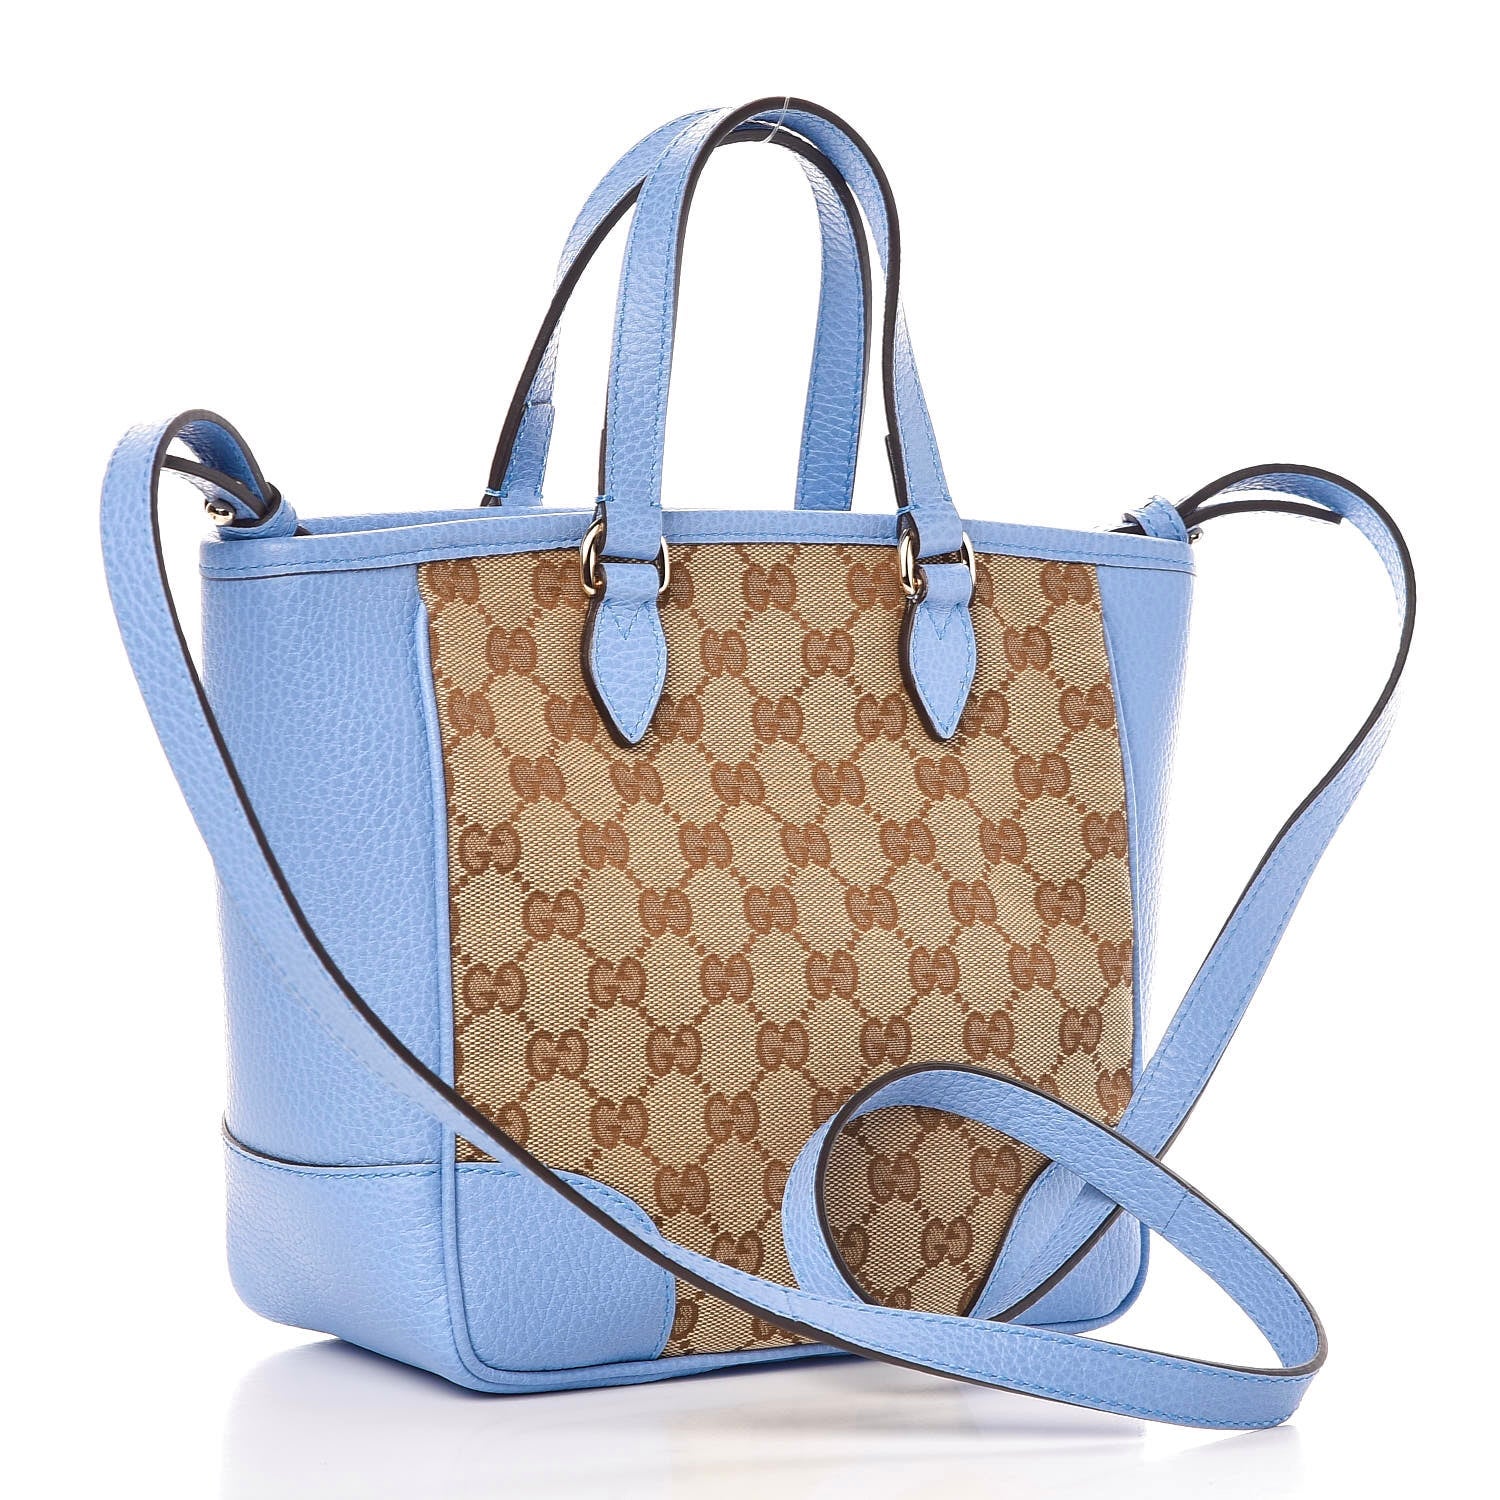 Totes bags Gucci - Bree Original GG canvas top handle bag